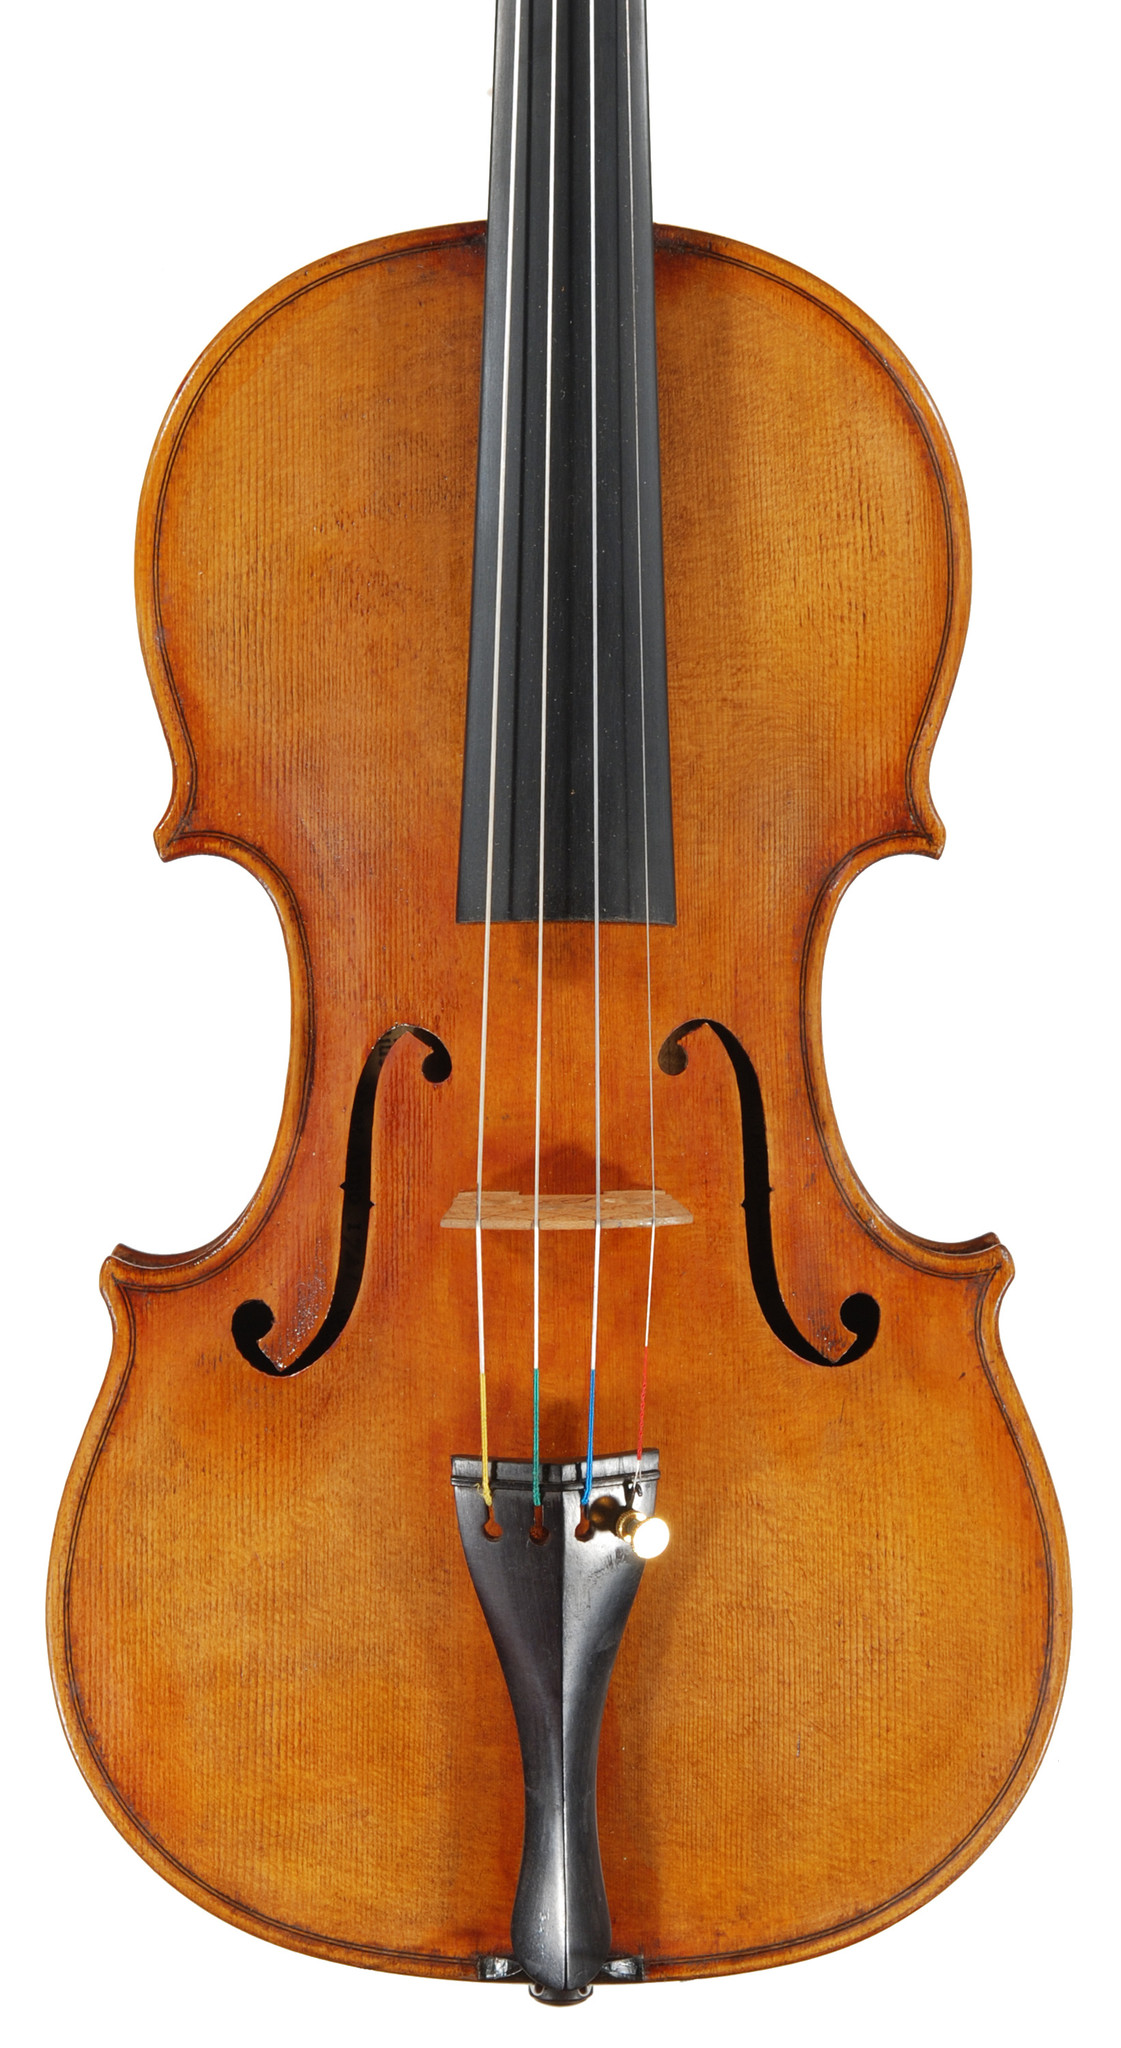 Douglas C. Cox violin,  "1721 Strad", #1030, 2021, Brattleboro, VT